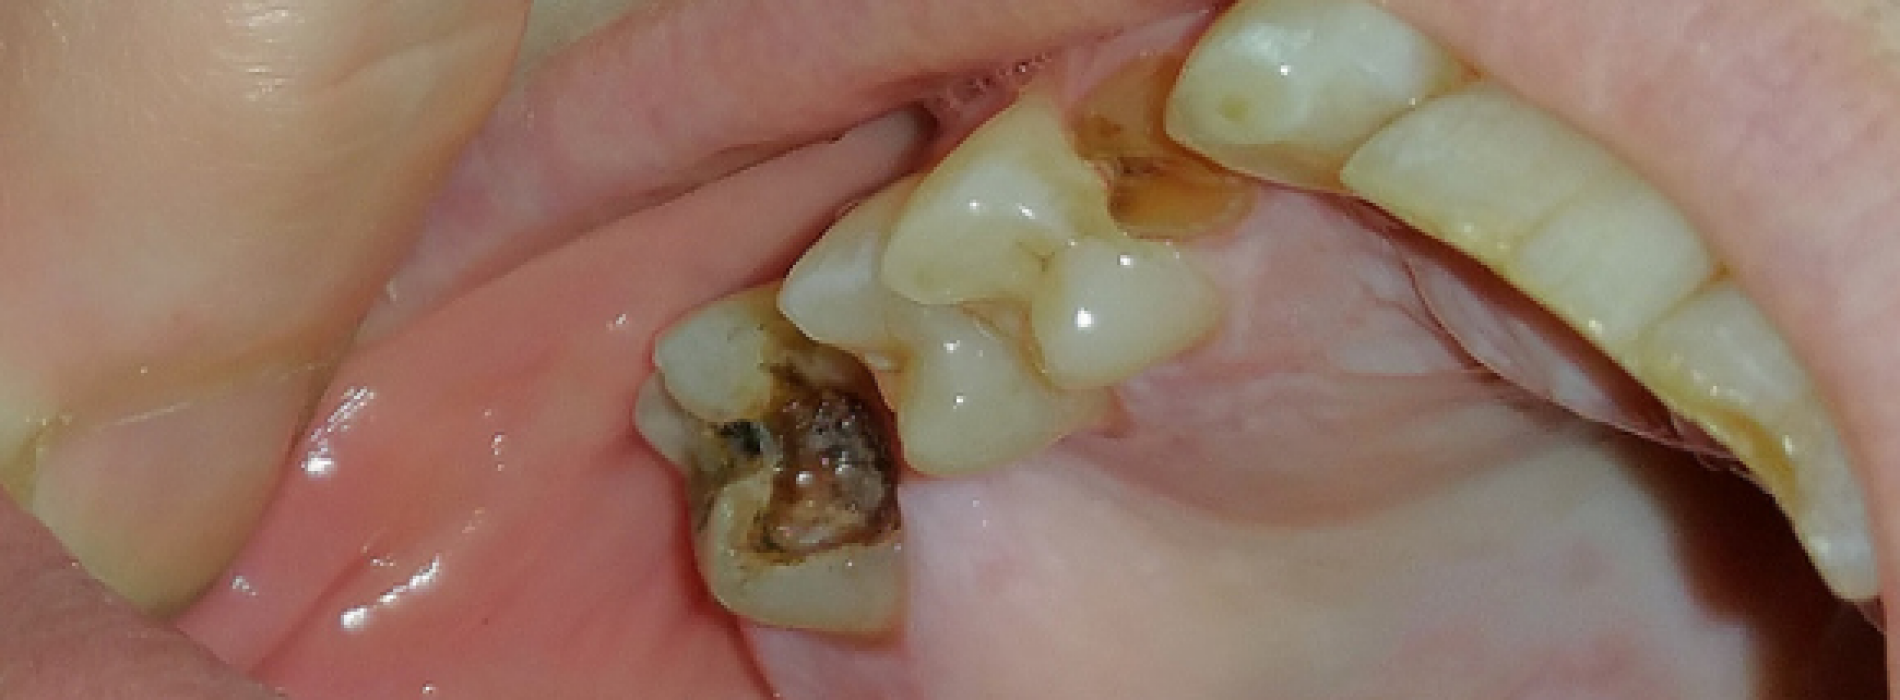 Met dit wijdverspreide geneesmiddel kunnen beschadigde tanden zich in de toekomst gewoon zelf herstellen. Dit is fantastisch!